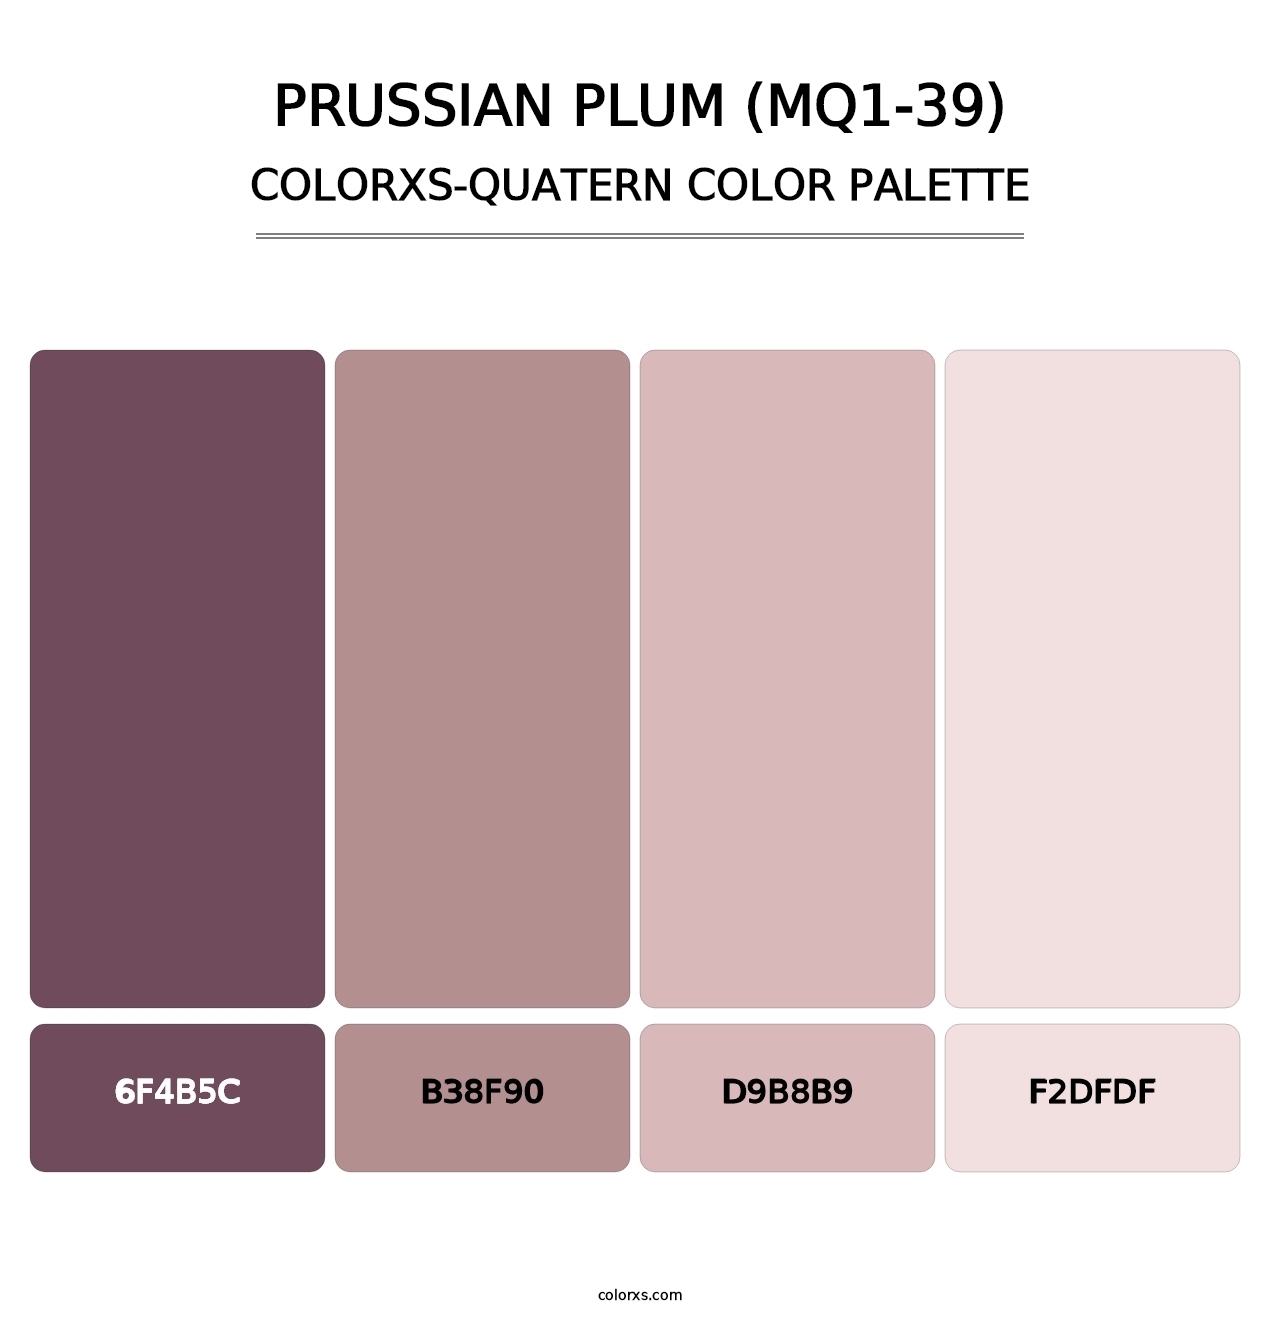 Prussian Plum (MQ1-39) - Colorxs Quatern Palette